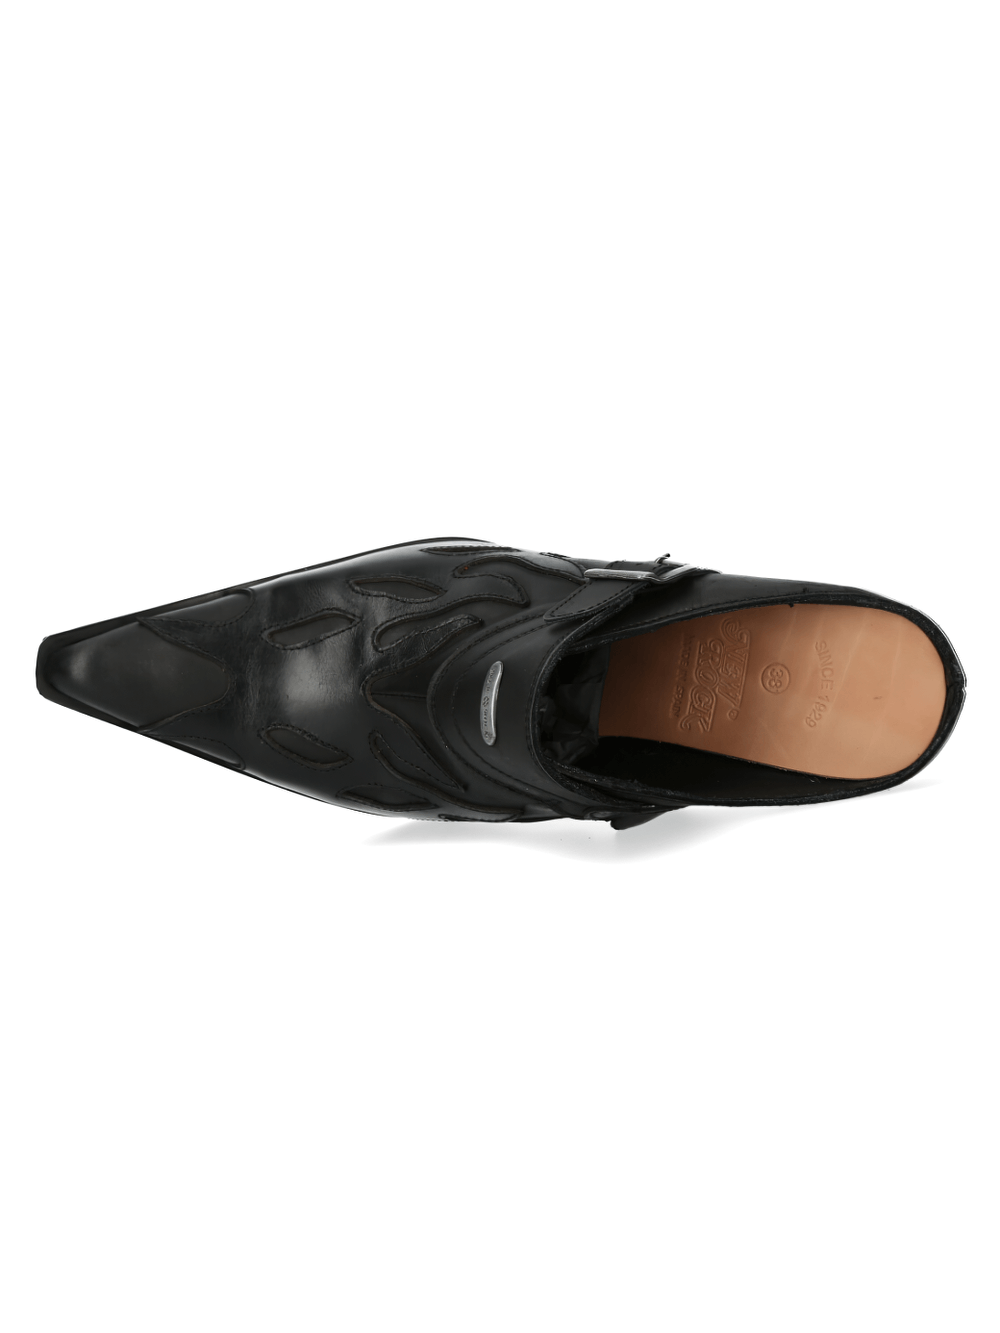 Chaussures à boucle en cuir noir inspirées des flammes NEW ROCK